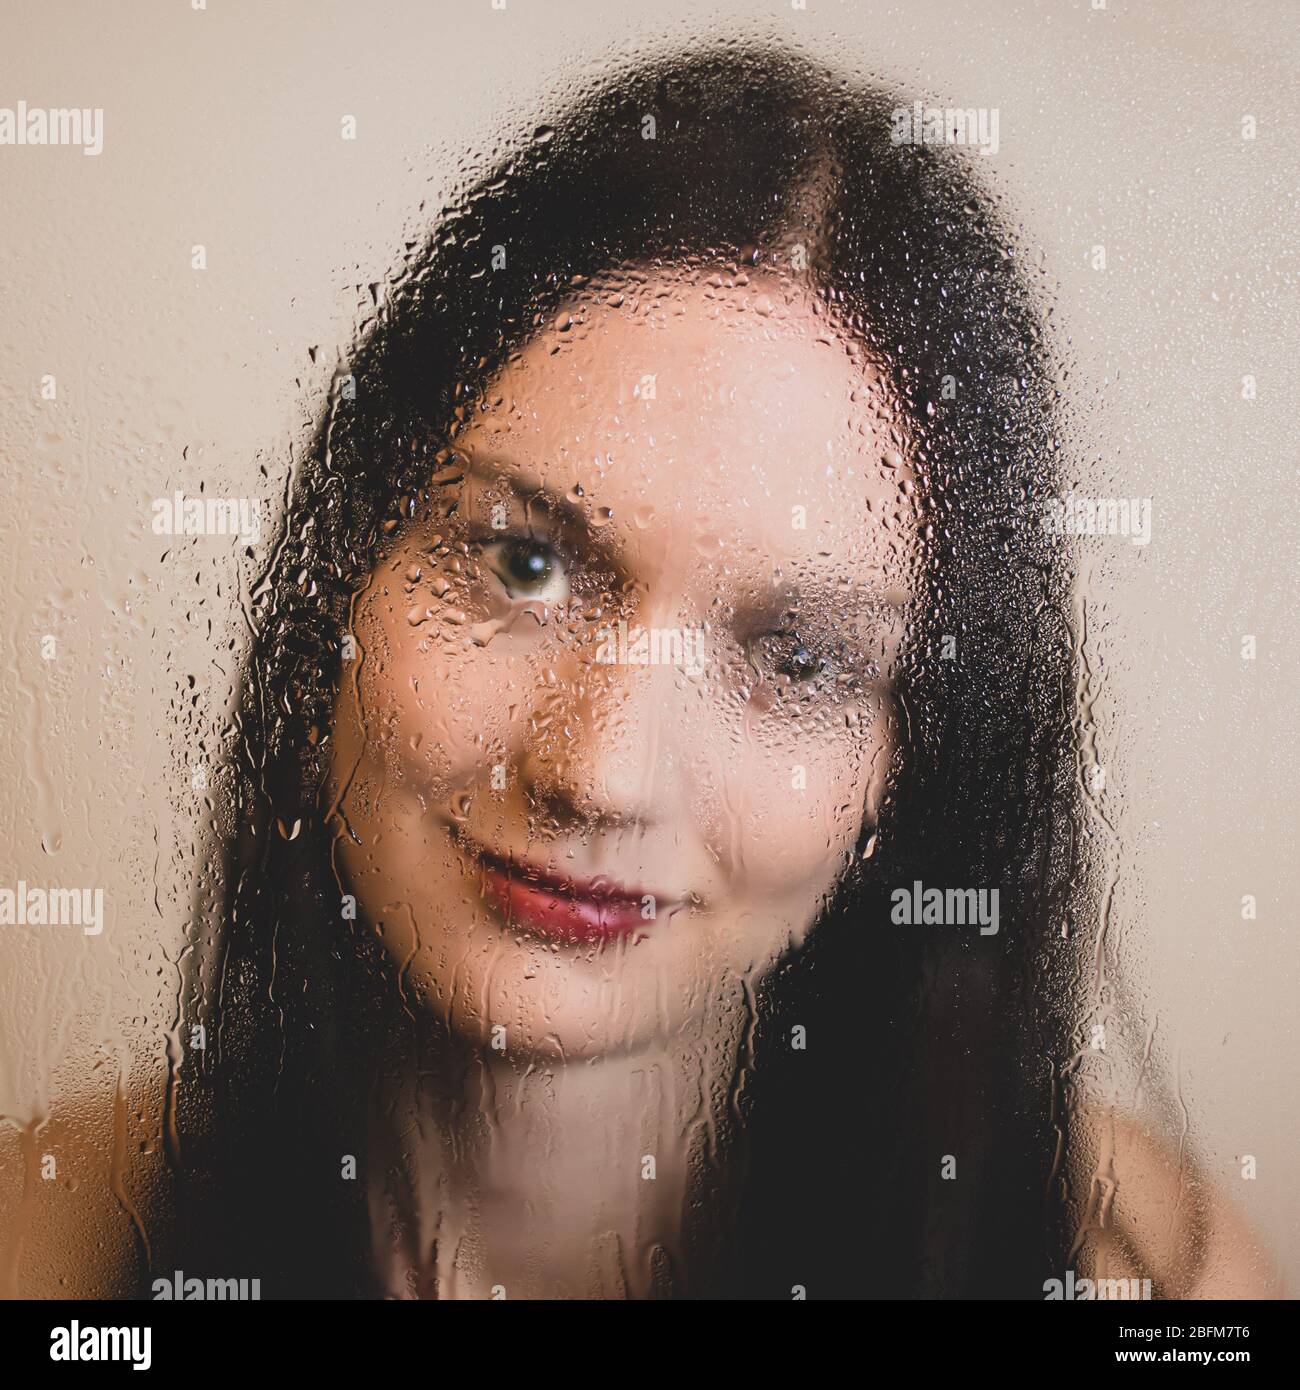 Visage de la jeune fille heureuse avec des cheveux longs et des lèvres rouges derrière une fenêtre en verre couverte de pluie. Photo libre de droit. Banque D'Images